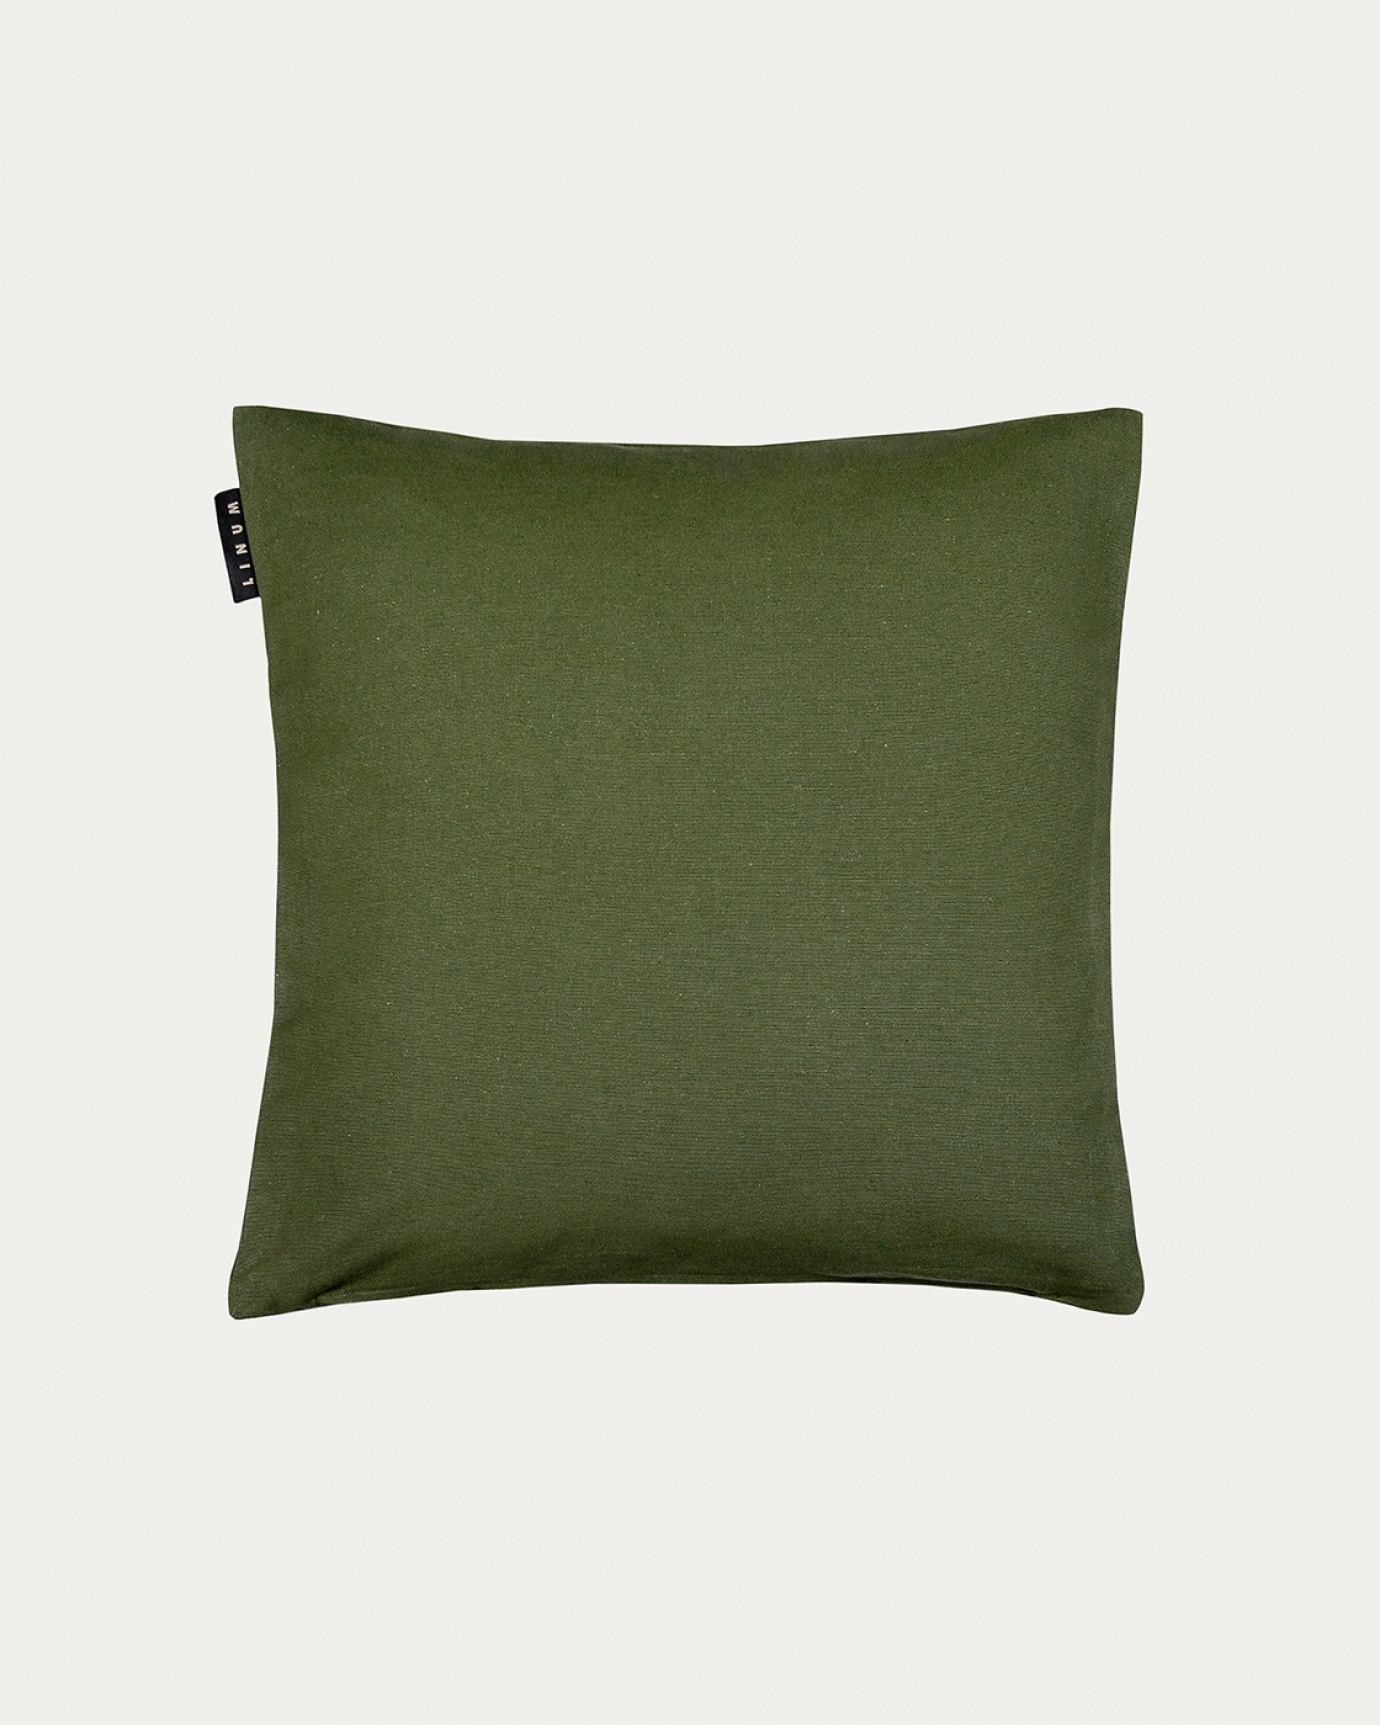 Immagine prodotto verde oliva scuro ANNABELL copricuscini in morbido cotone di LINUM DESIGN. Dimensioni 40x40 cm.